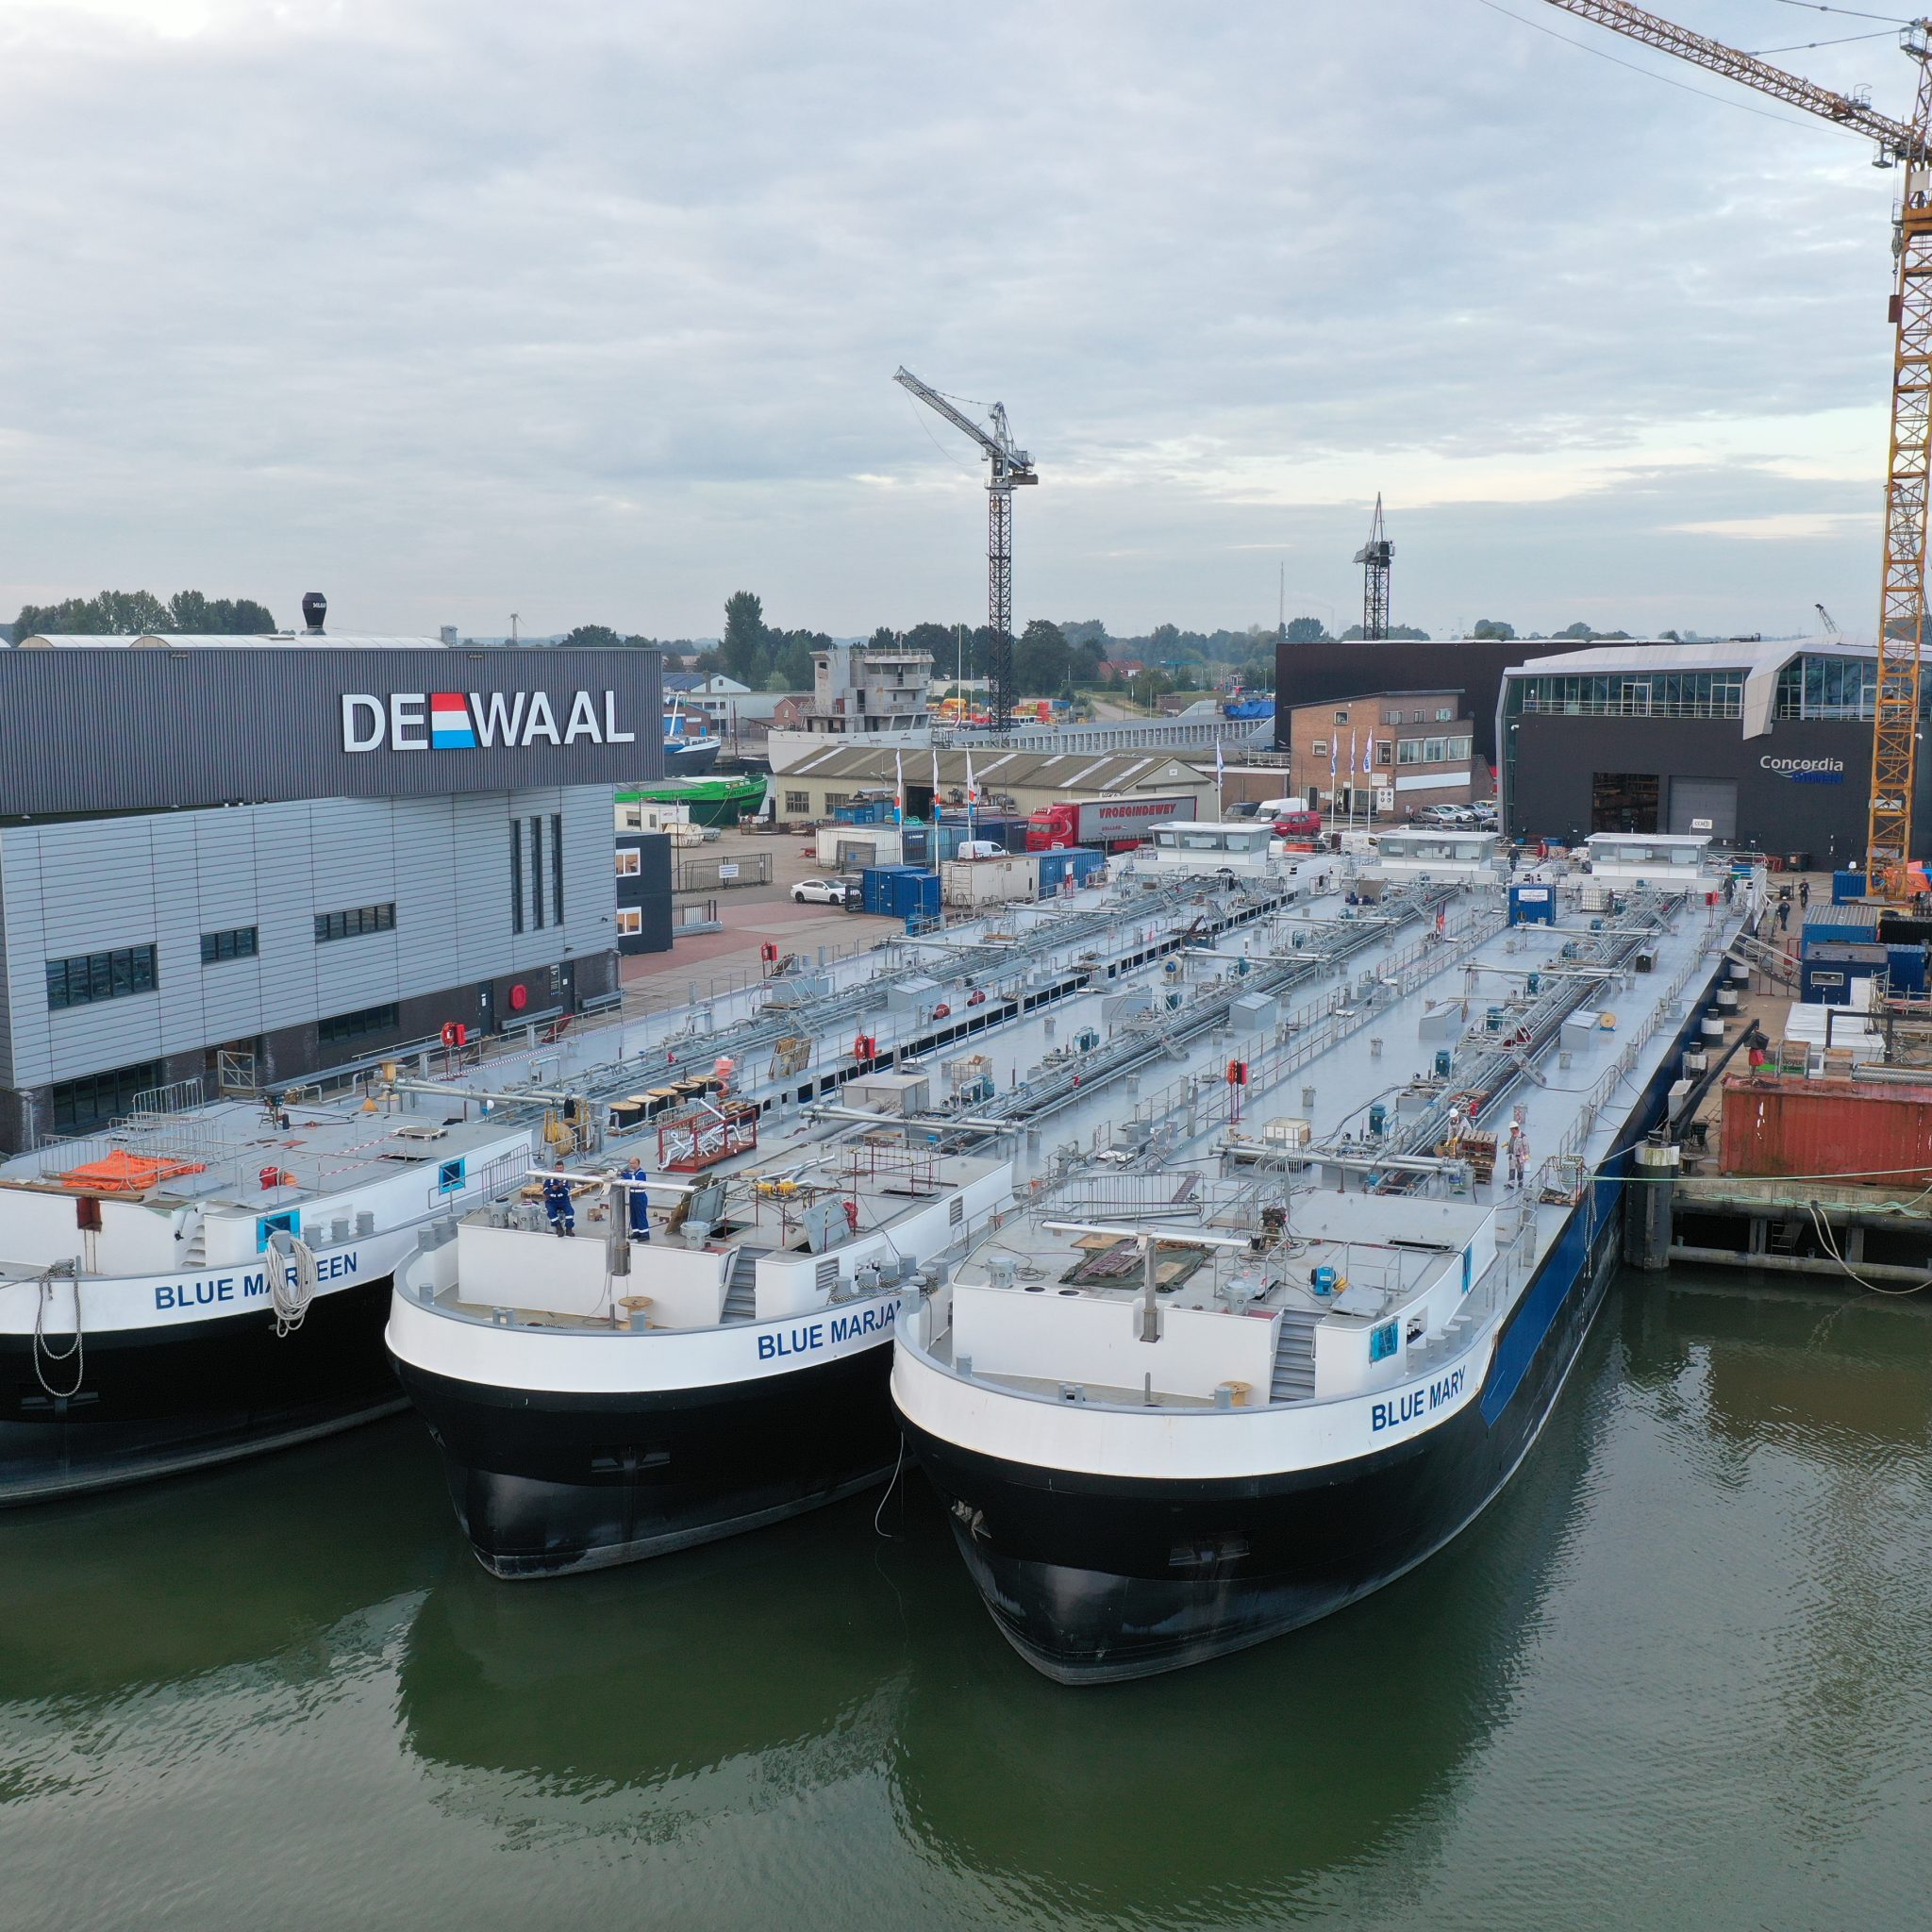 Drie LNG-tankers aan de kade in Werkendam. De middelste, Blue Marjan, is bijna klaar. Het schip dankt haar naam aan Marjan van Loon, directeur van Shell Nederland. (Foto's Concordia Damen)